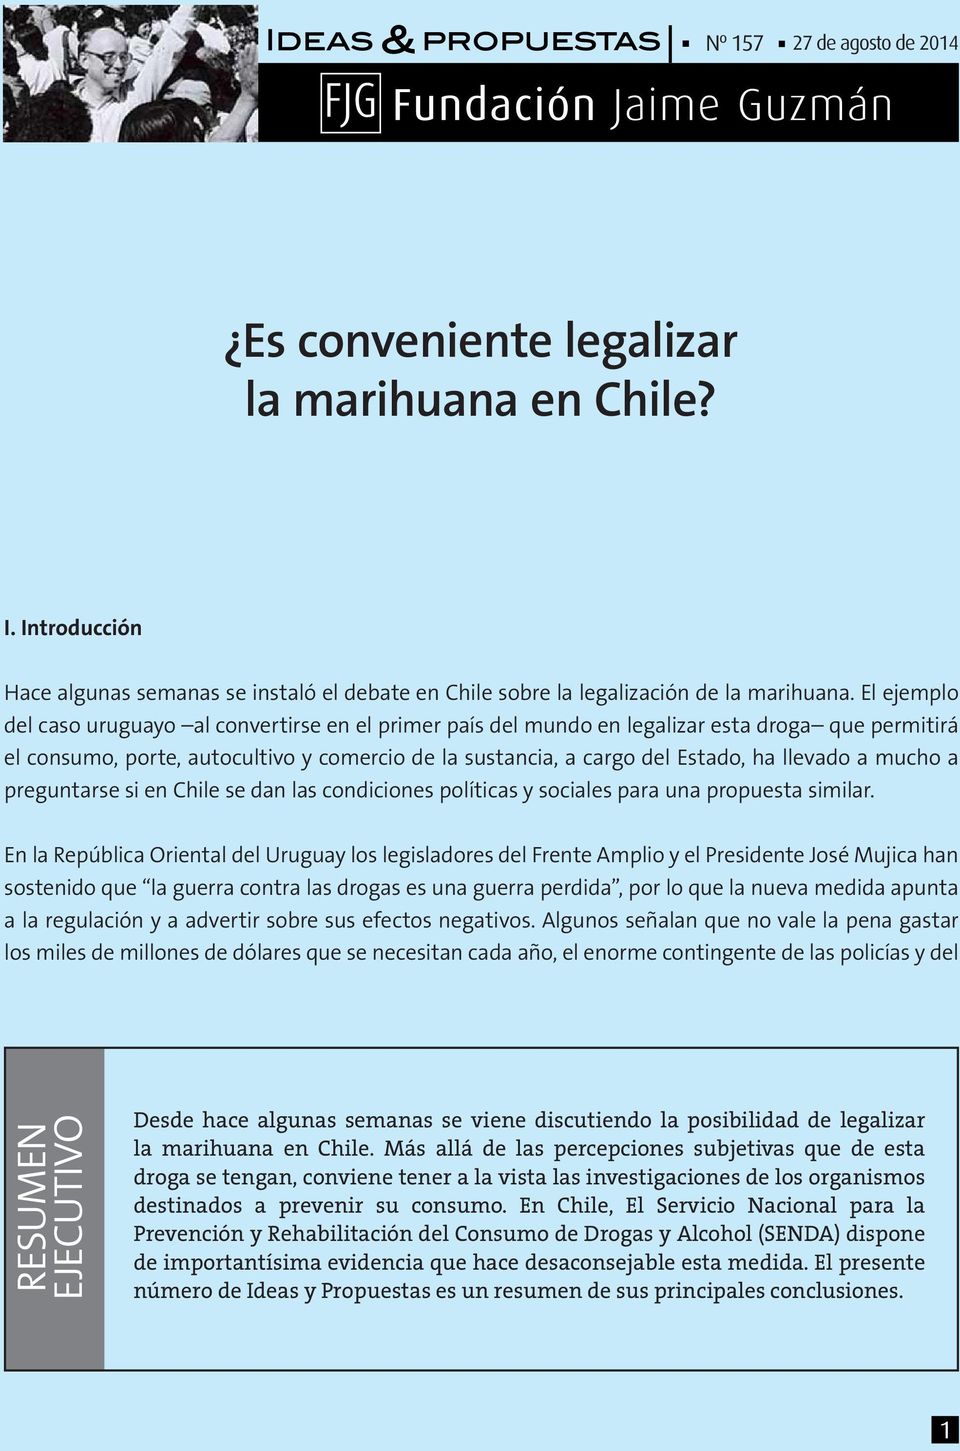 a mucho a preguntarse si en Chile se dan las condiciones políticas y sociales para una propuesta similar.